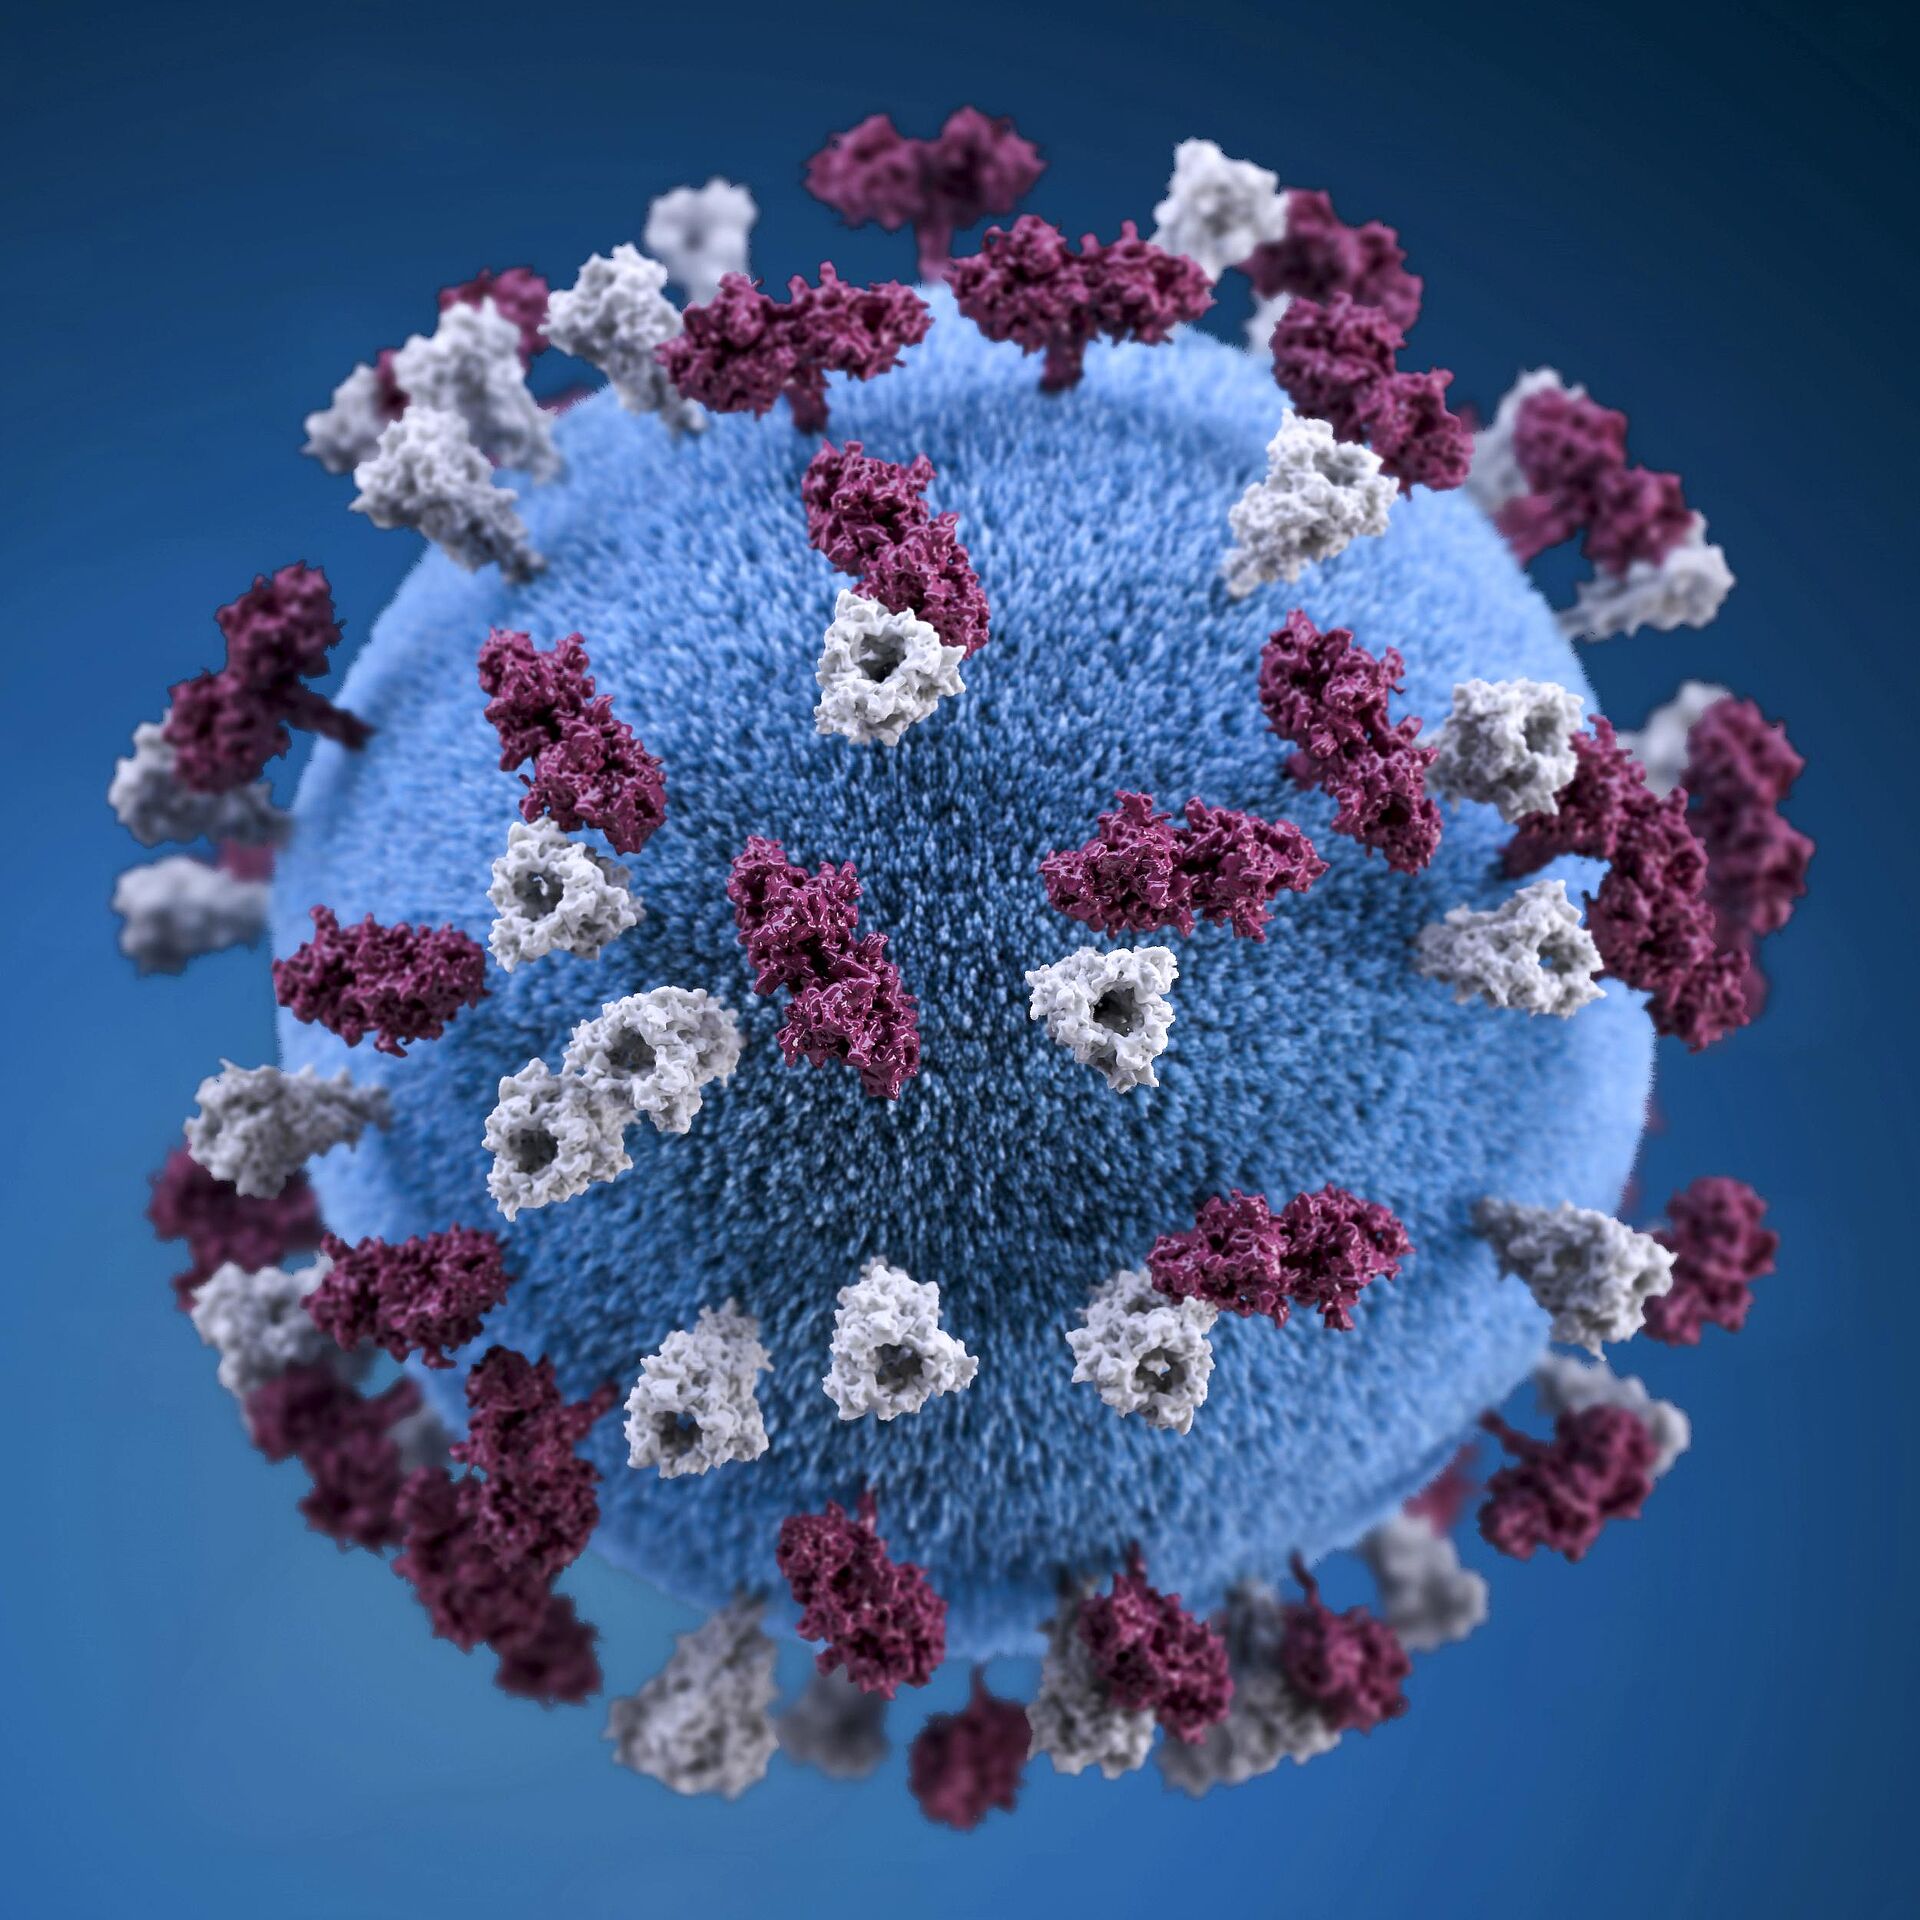 Abbild eines Corona Virus